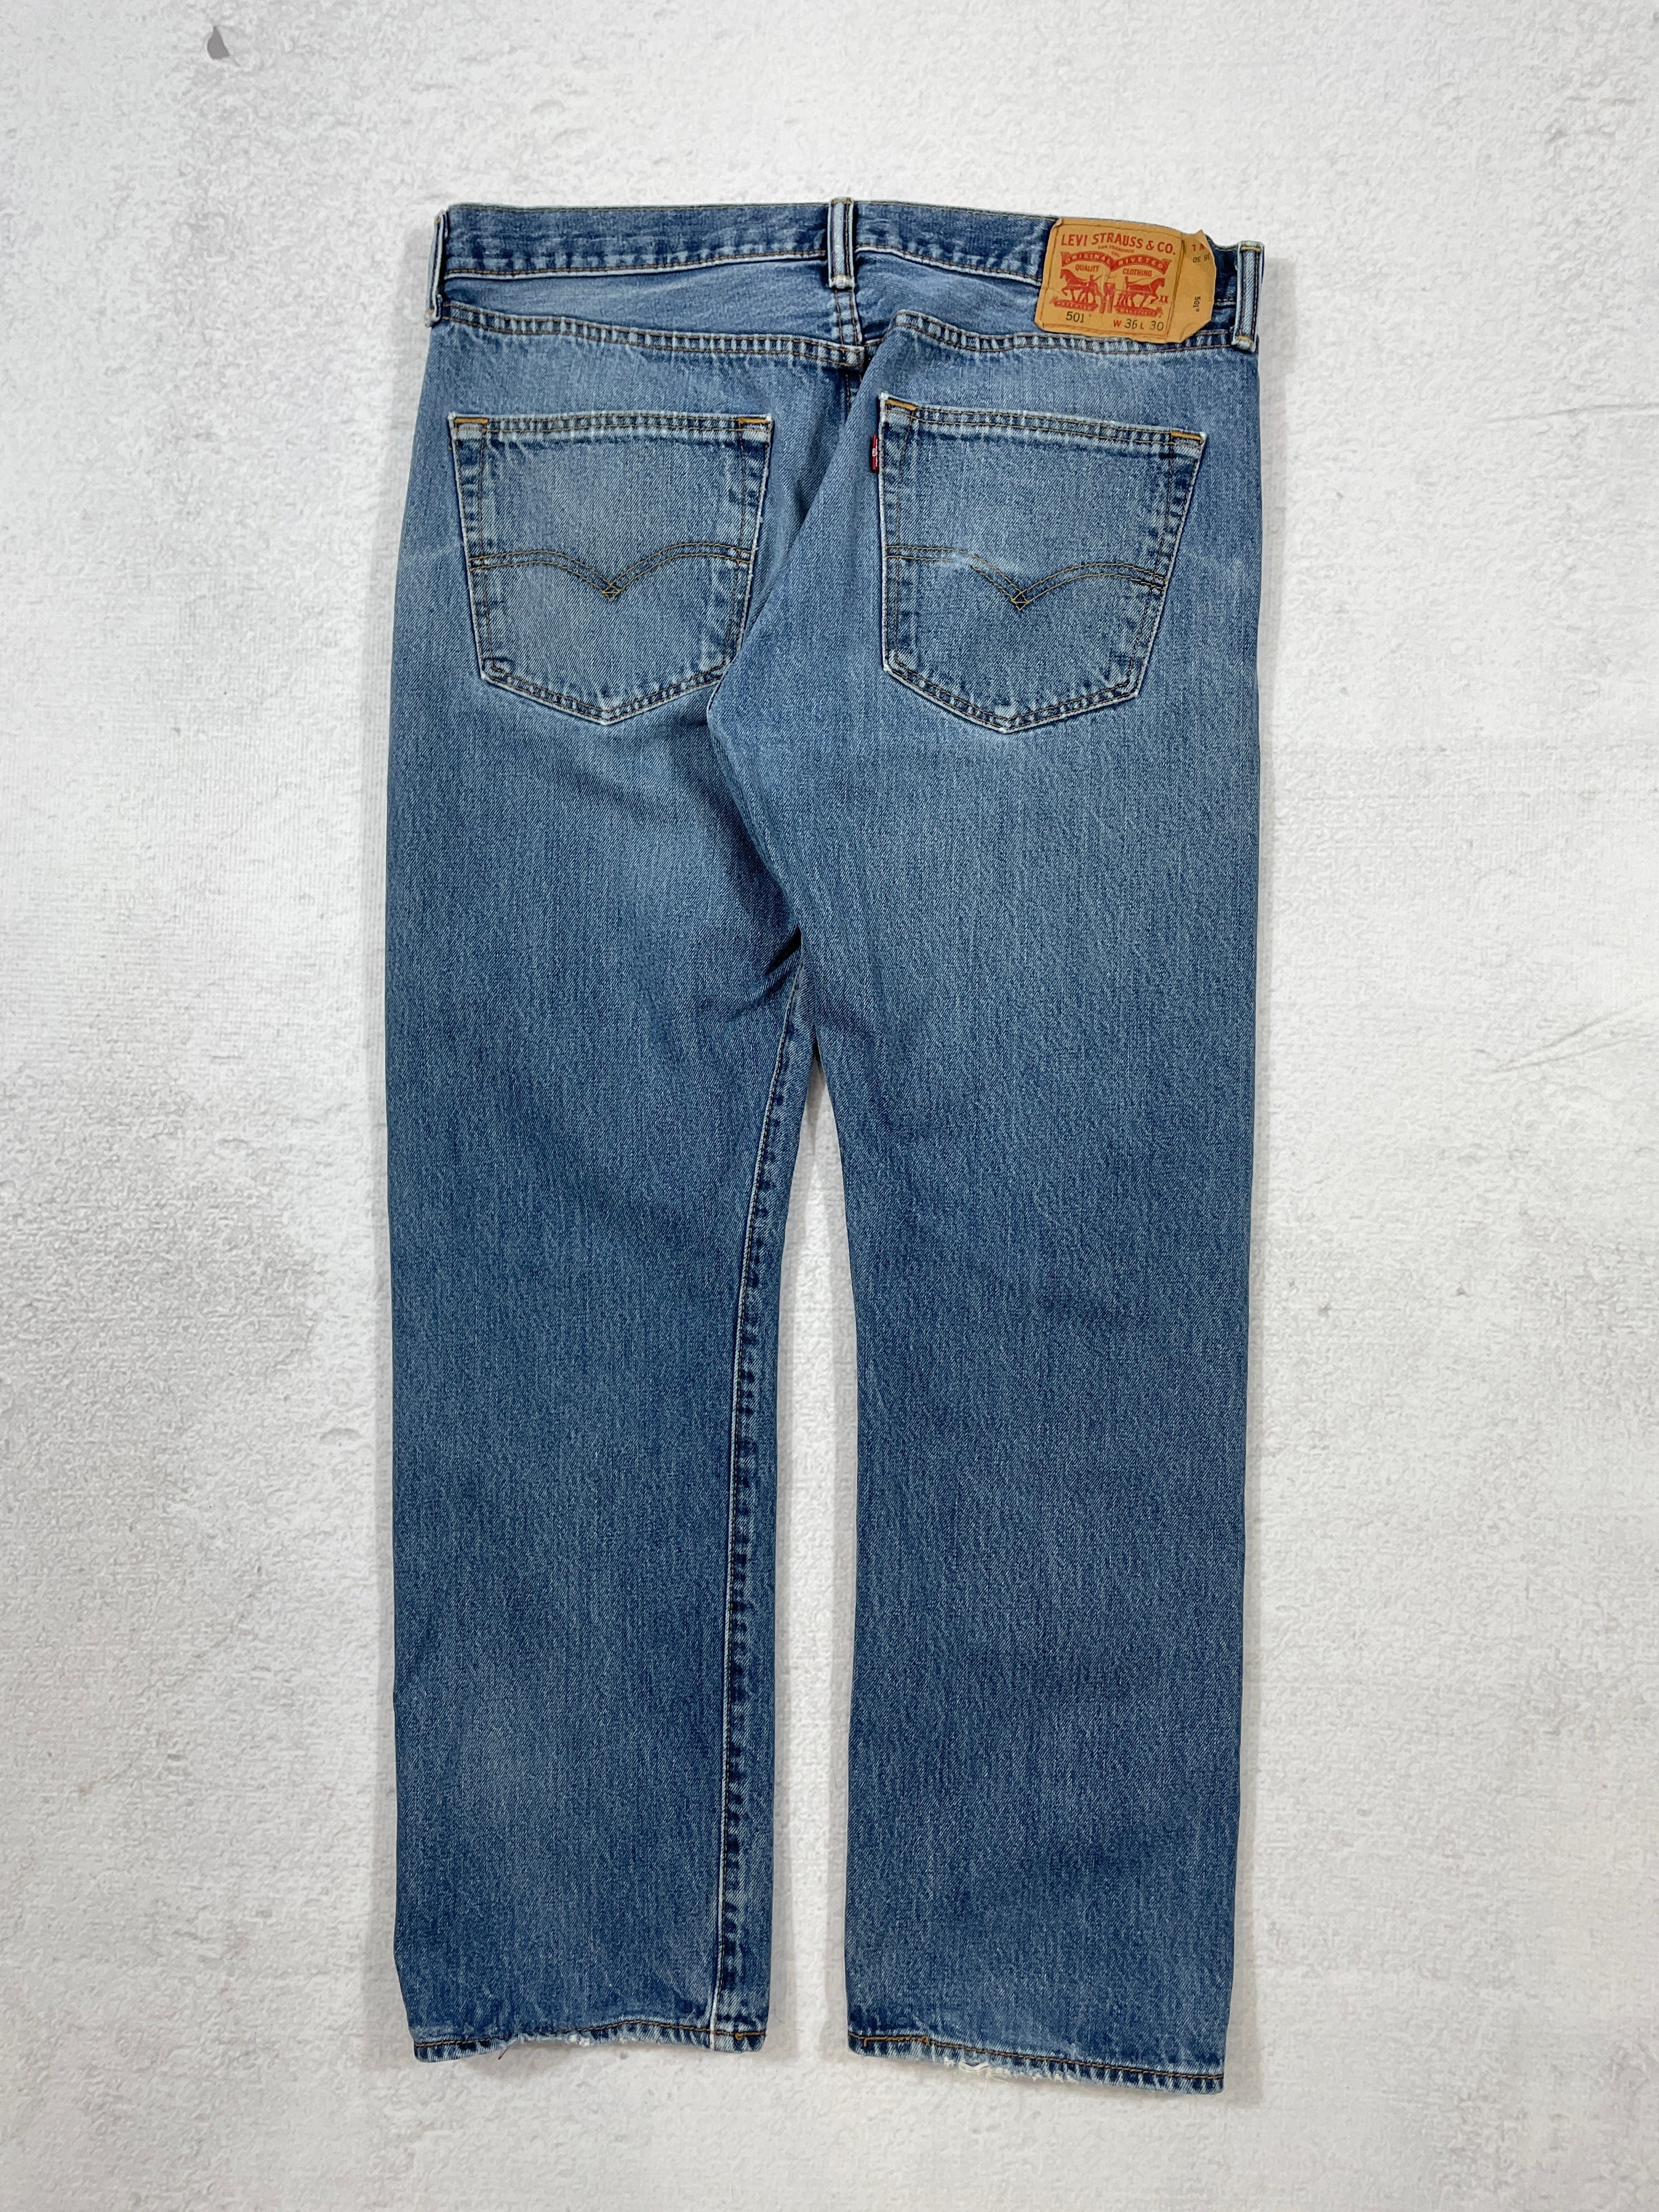 Vintage Levis 501 Jeans - Men's 36Wx30L